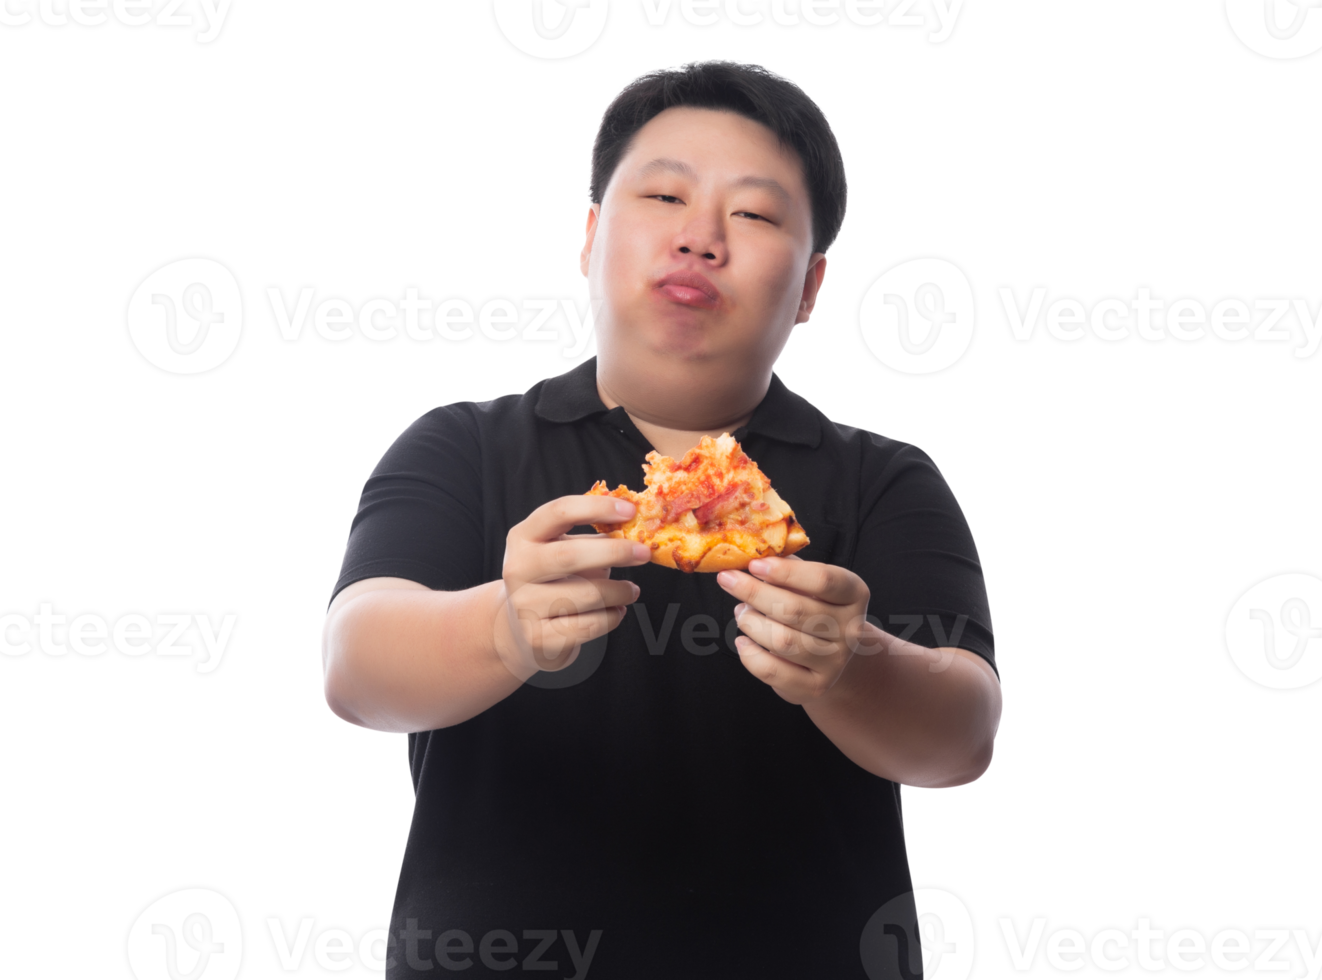 jonge grappige dikke Aziatische man met pizza, png-bestand png